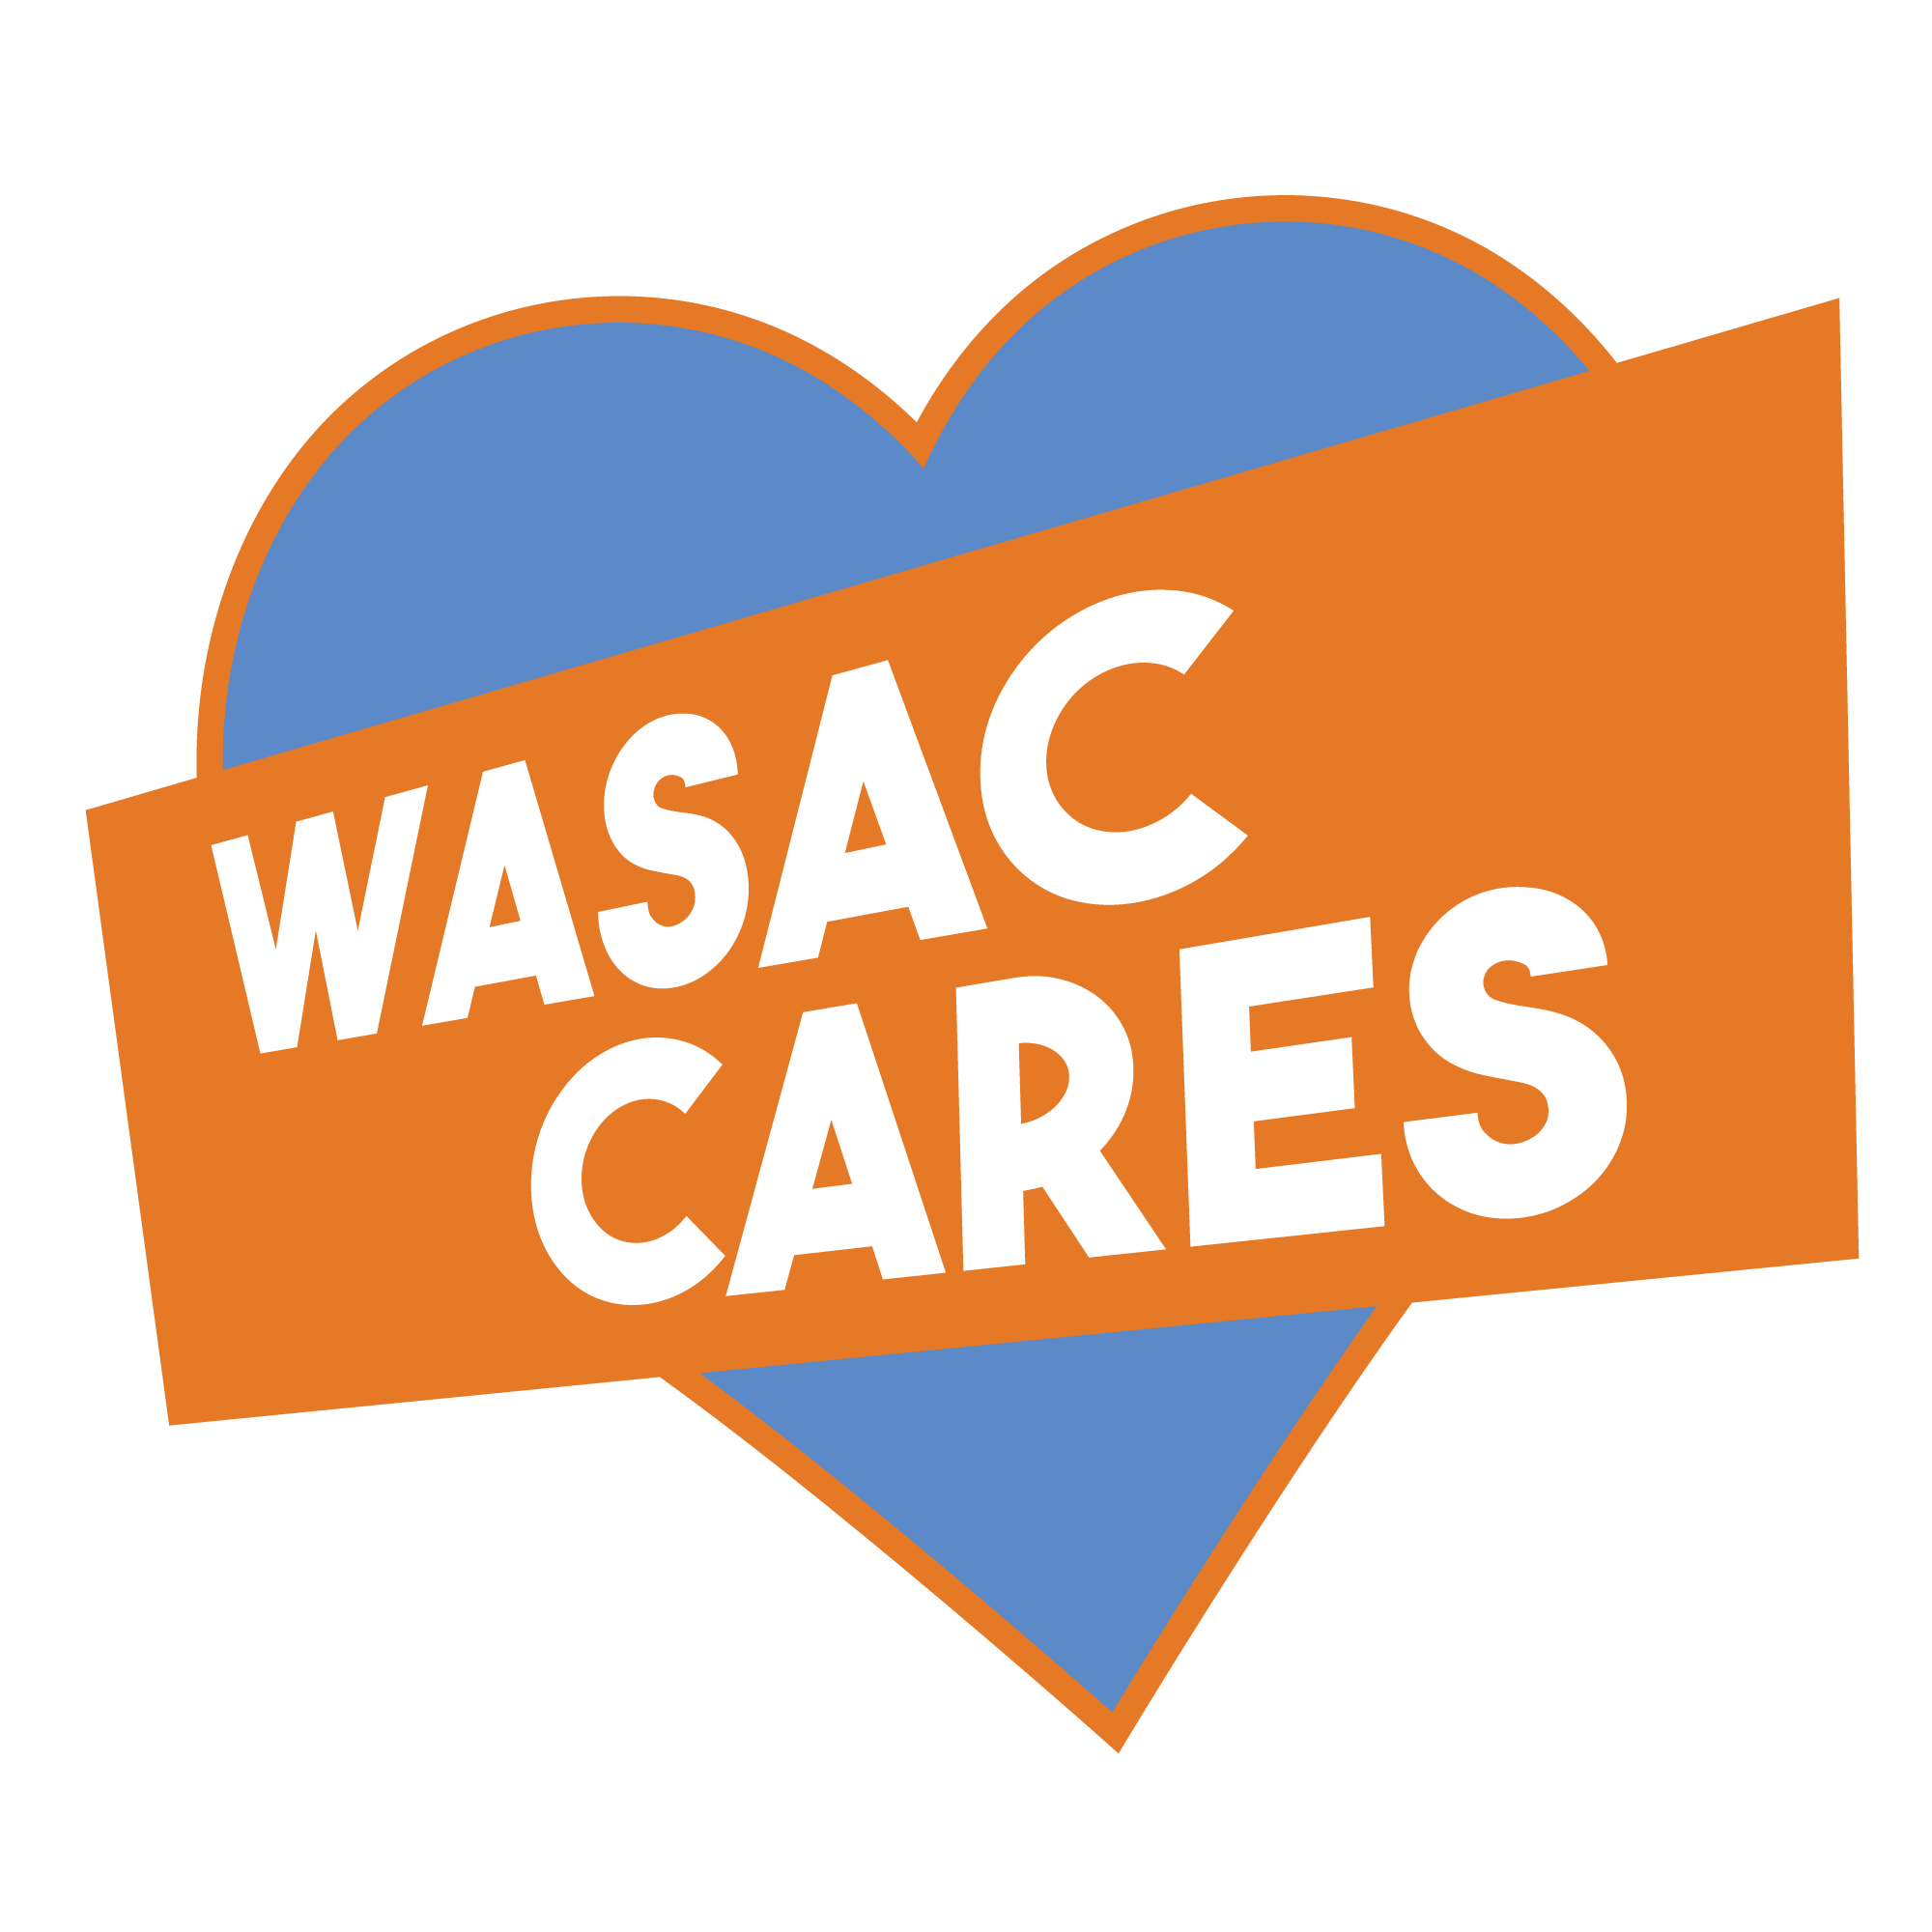 It's WASAC (Winnipeg Aboriginal Sport Achievement Centre) night at